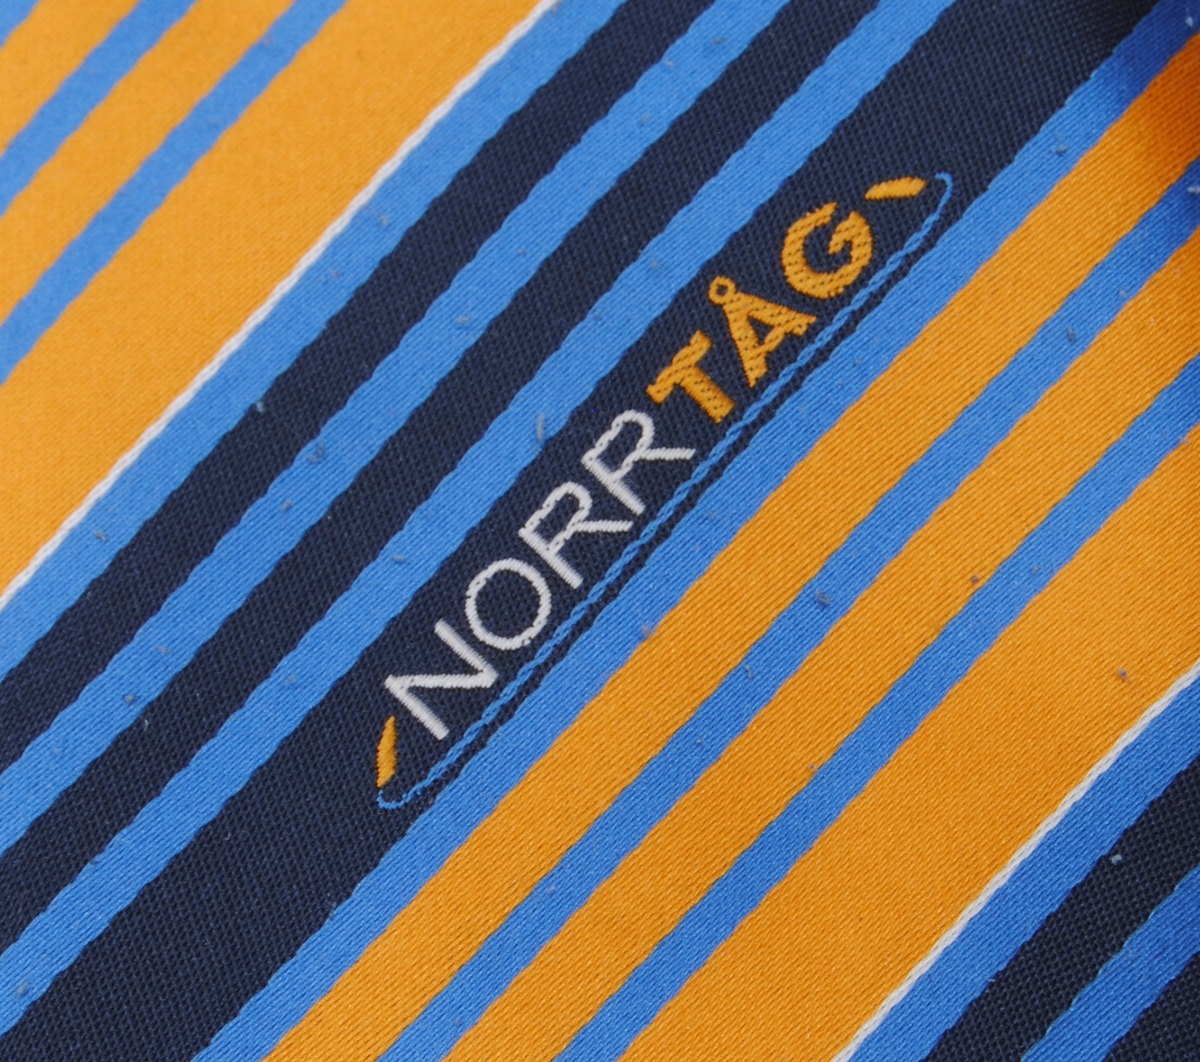 Diagonalmönstrad slips i två olika toner av blått samt gul- och vit färg med broderad text. Slipsen är i två delar och fästs ihop i nacken med hjälp av ett kardborreband. Slipsen är fodrat med en svart textil.(:1) Den smalare delen är försedd med en svart lapp med bland annat tvättråd.(:2)